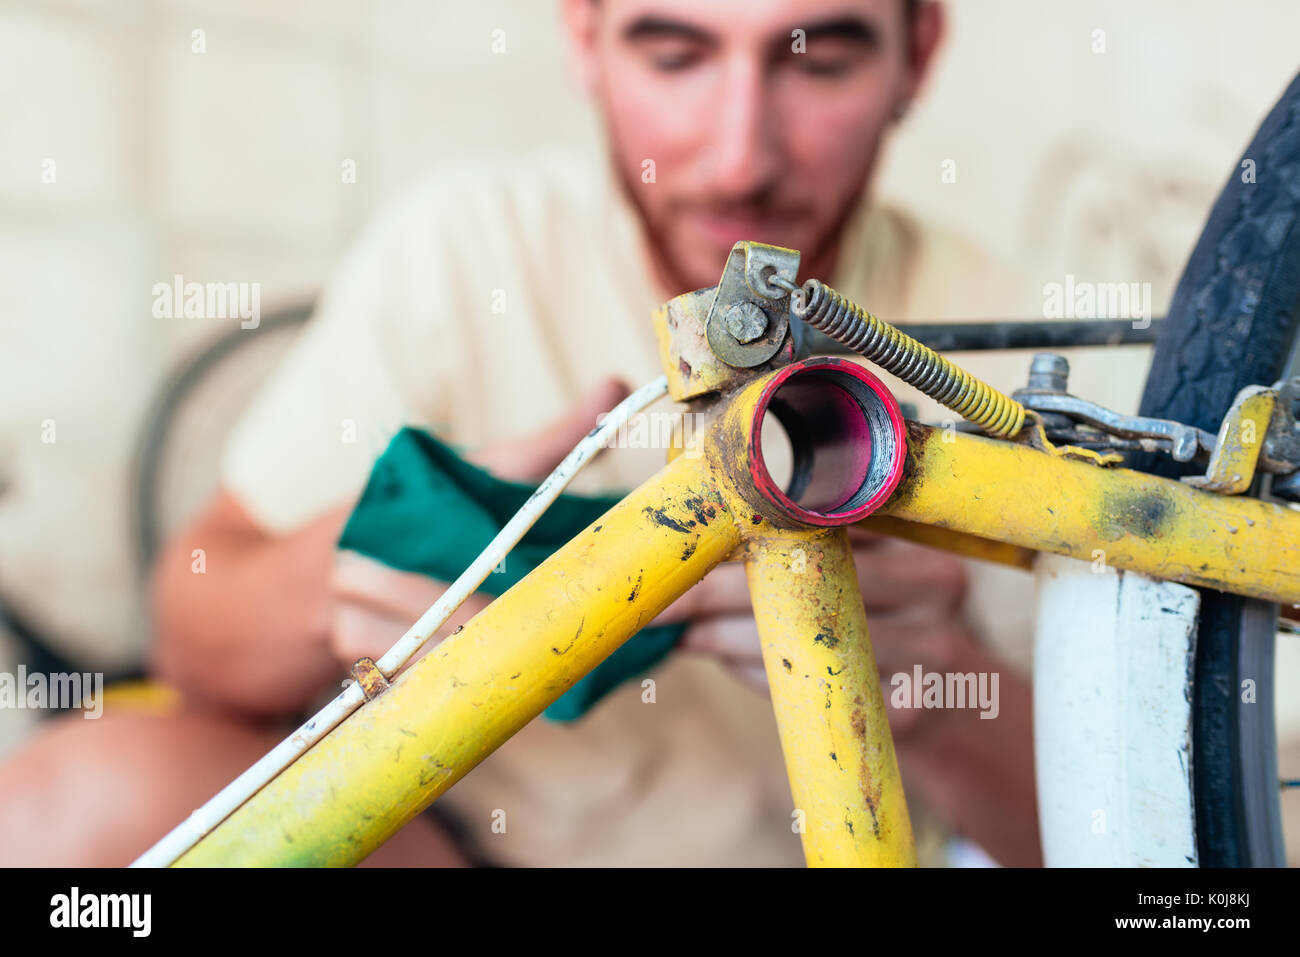 1.496 Bike Repair Boy Bilder und Fotos - Getty Images